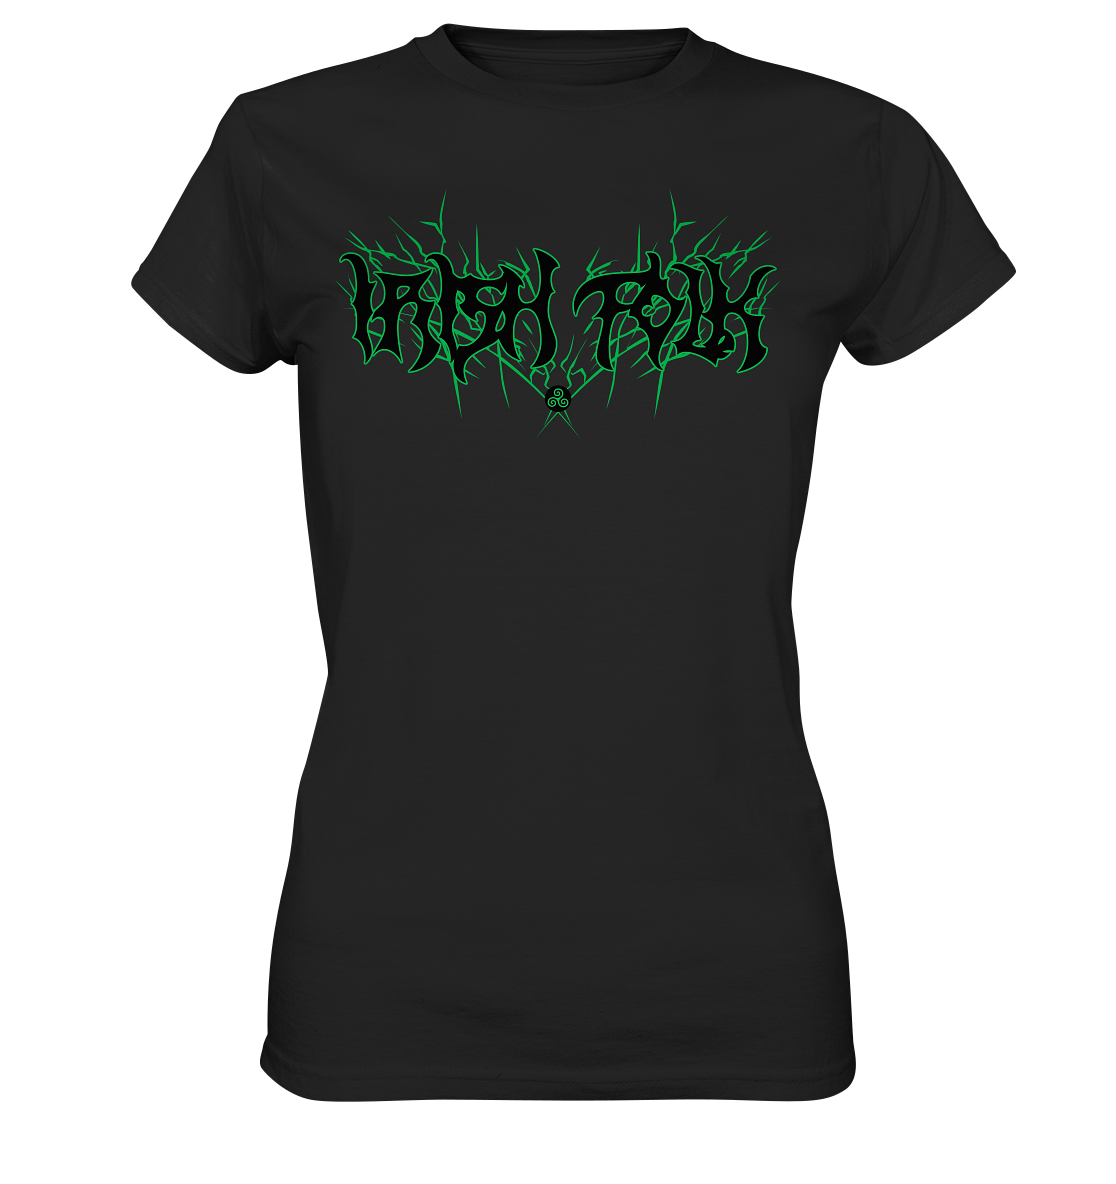 Irish Folk "Metal Band" - Ladies Premium Shirt